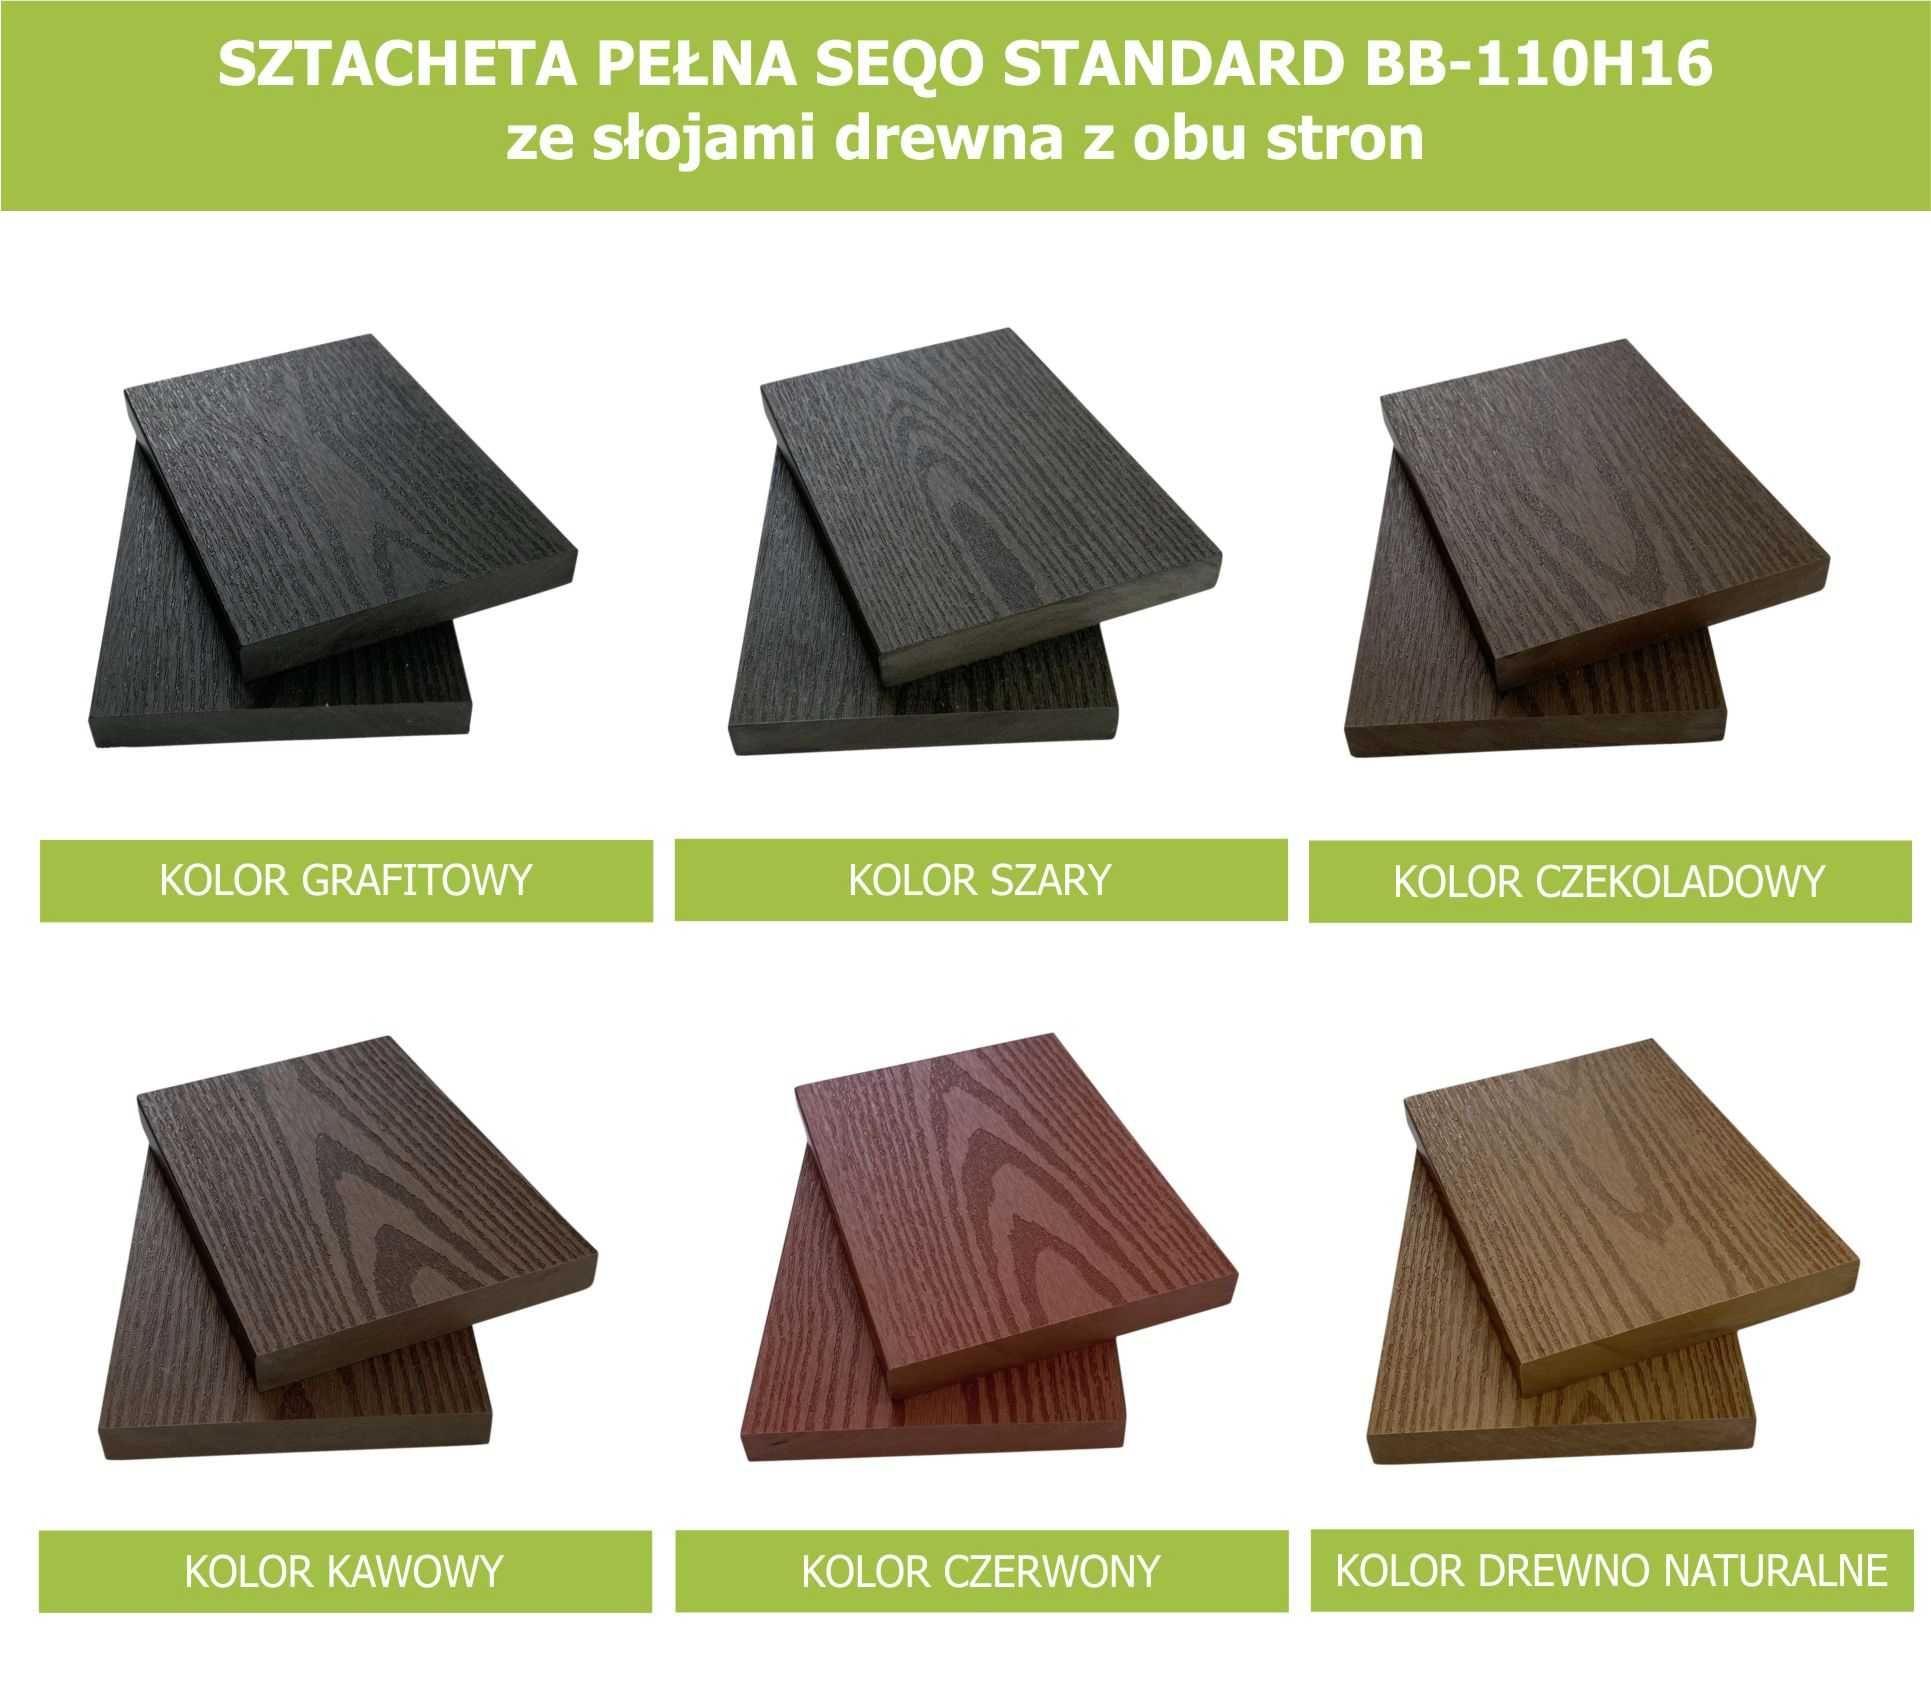 Sztacheta kompozytowa pełna SEQO Standard BB-110H16 słoje drewna 0,95m